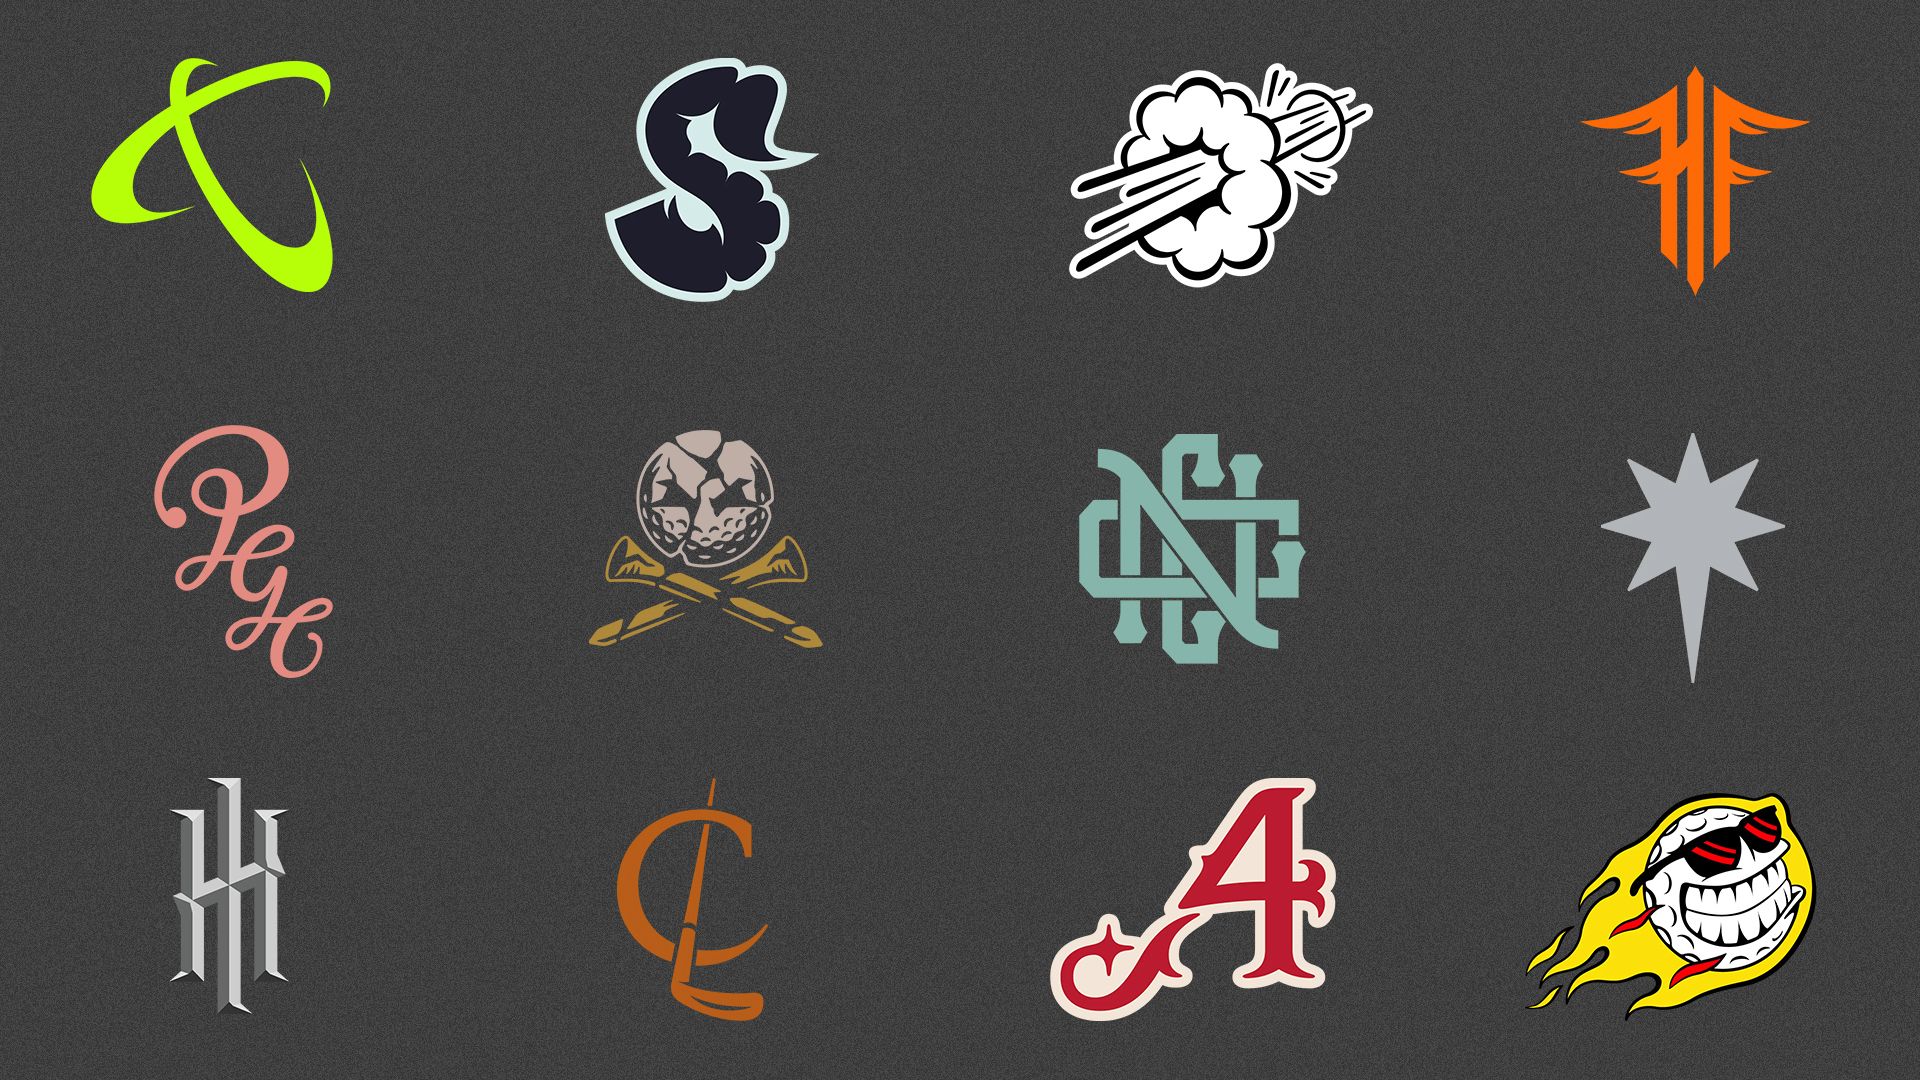 LIV team logos